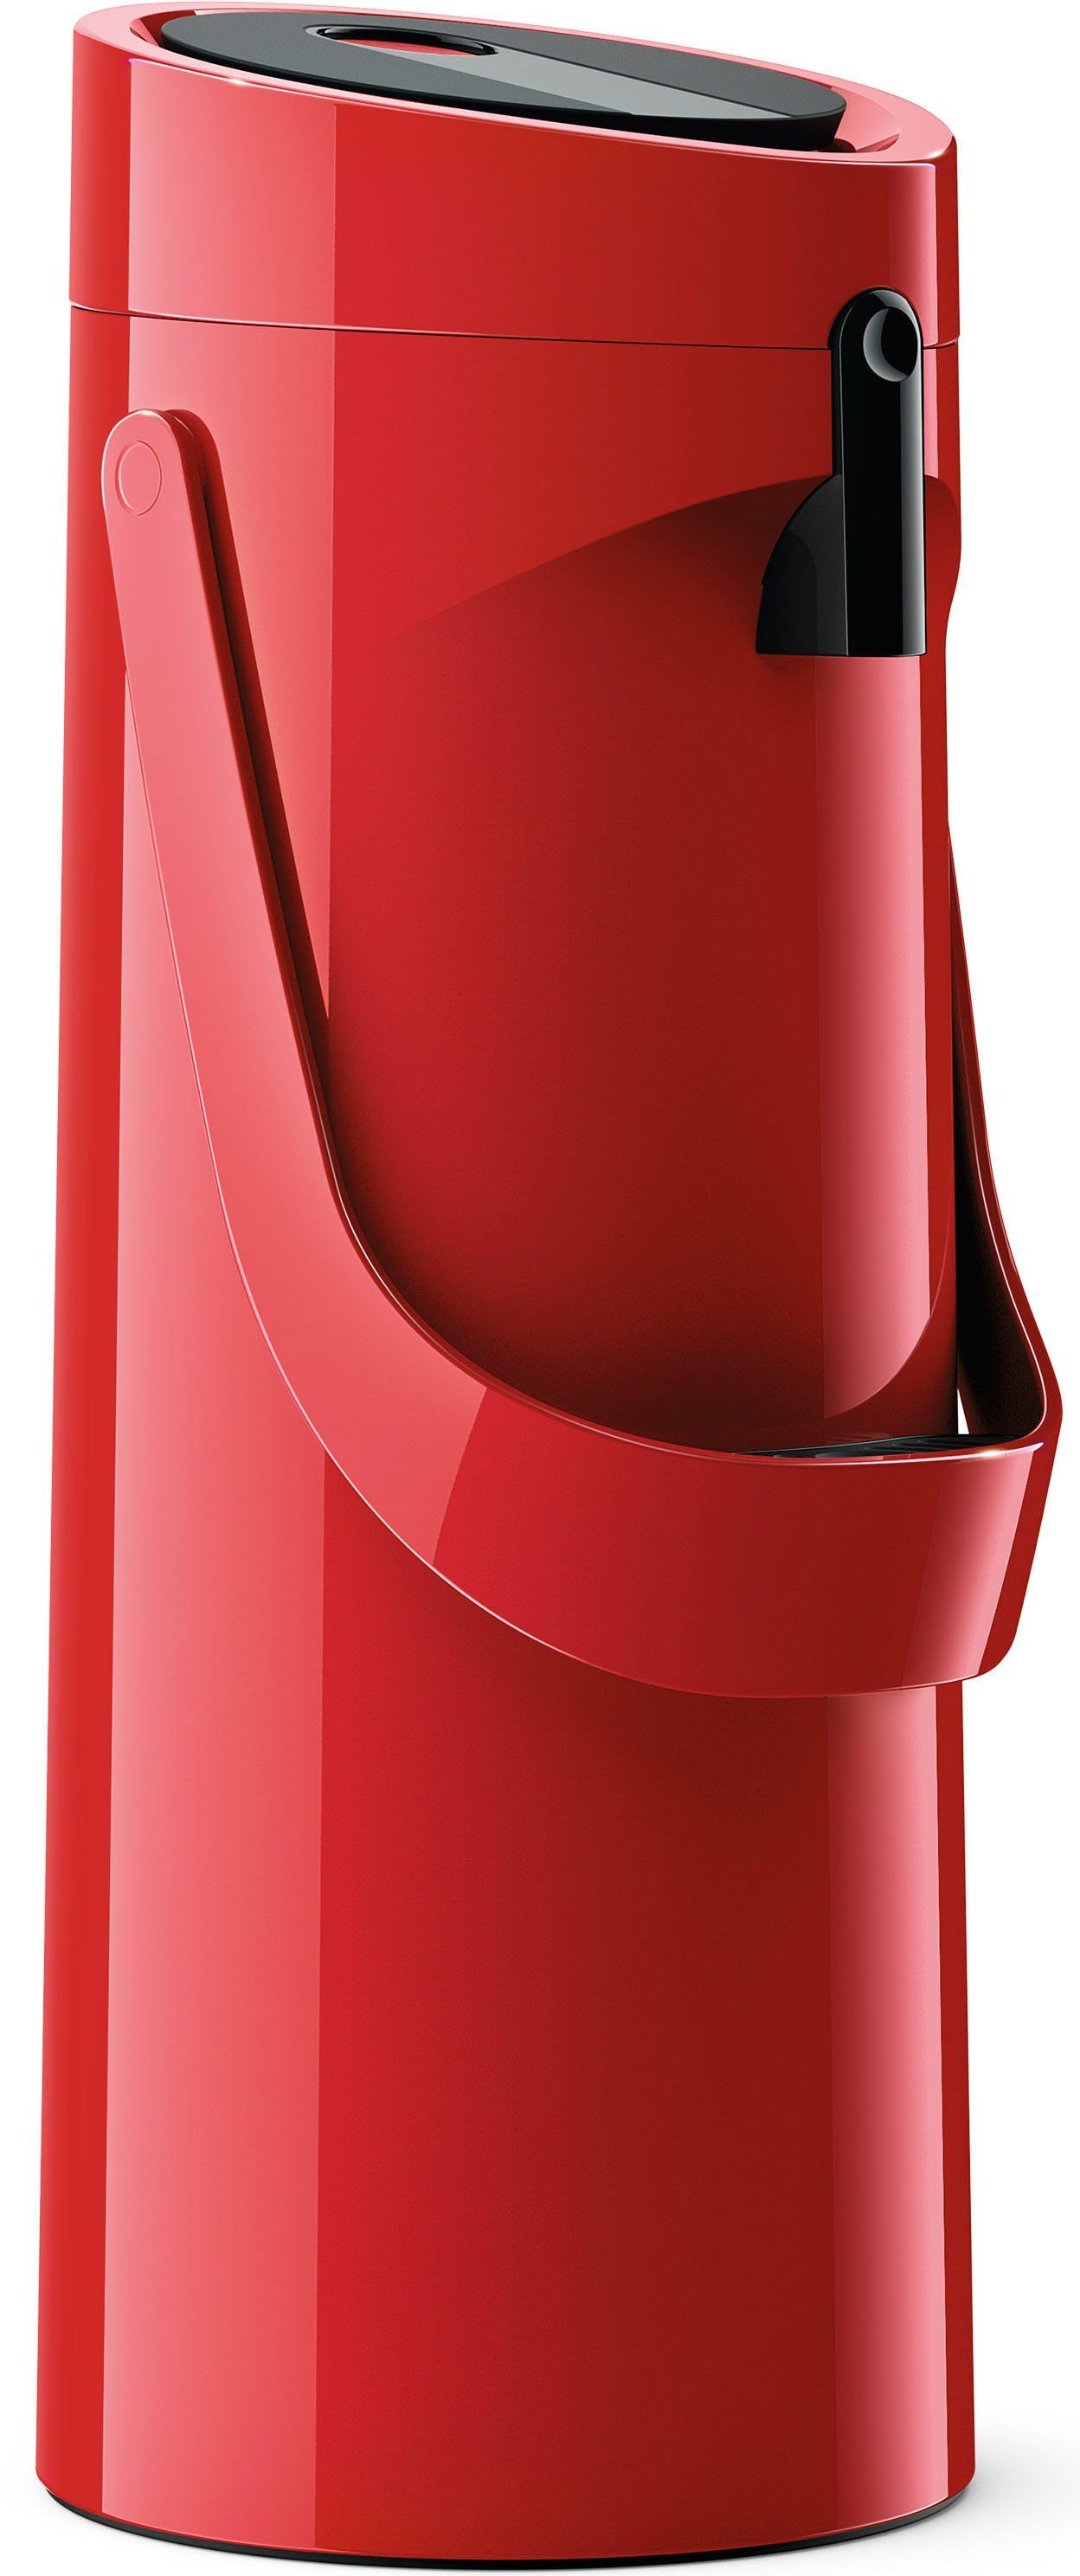 Emsa Pump-Isolierkanne Ponza Pump, 1,9 l, hält heiße Getränke 12 Stunden heiß, kalte 24 Stunden kalt rot